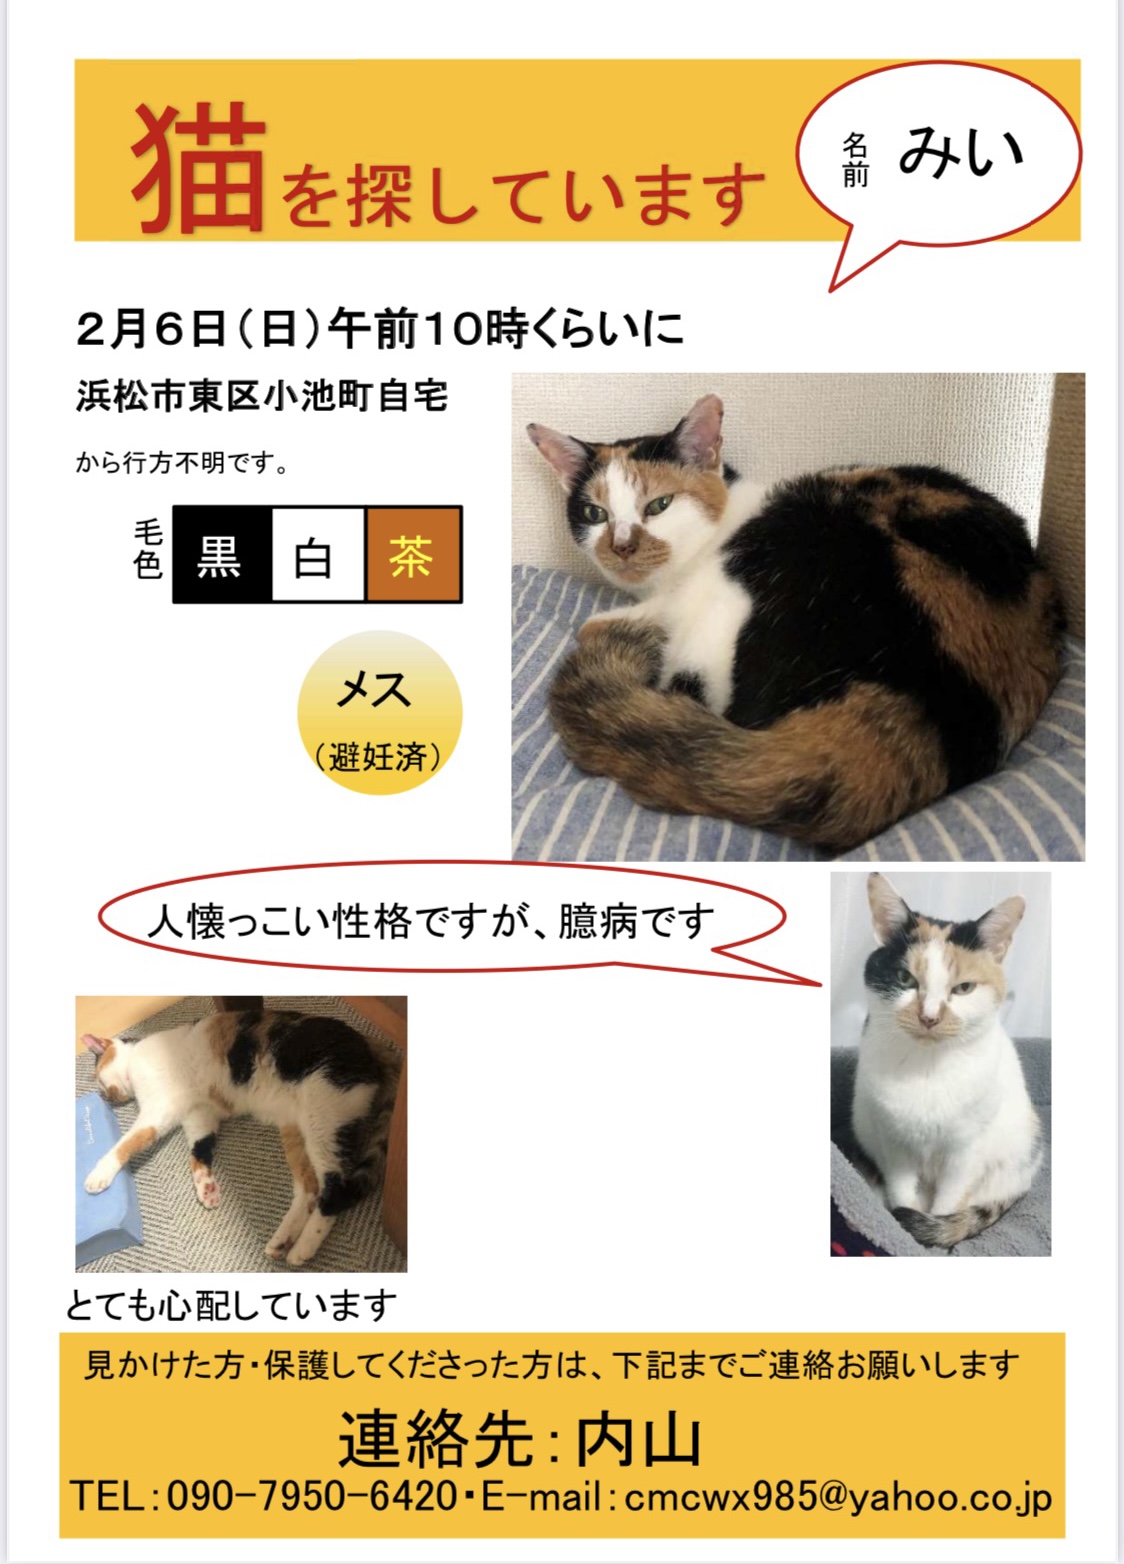 探しています 迷い猫 迷い犬情報 猫と暮らす会 静岡県浜松市を拠点とし 人と猫の共生をテーマに活動を行なっております 猫 の里親募集中 譲渡会も定期的に行っています